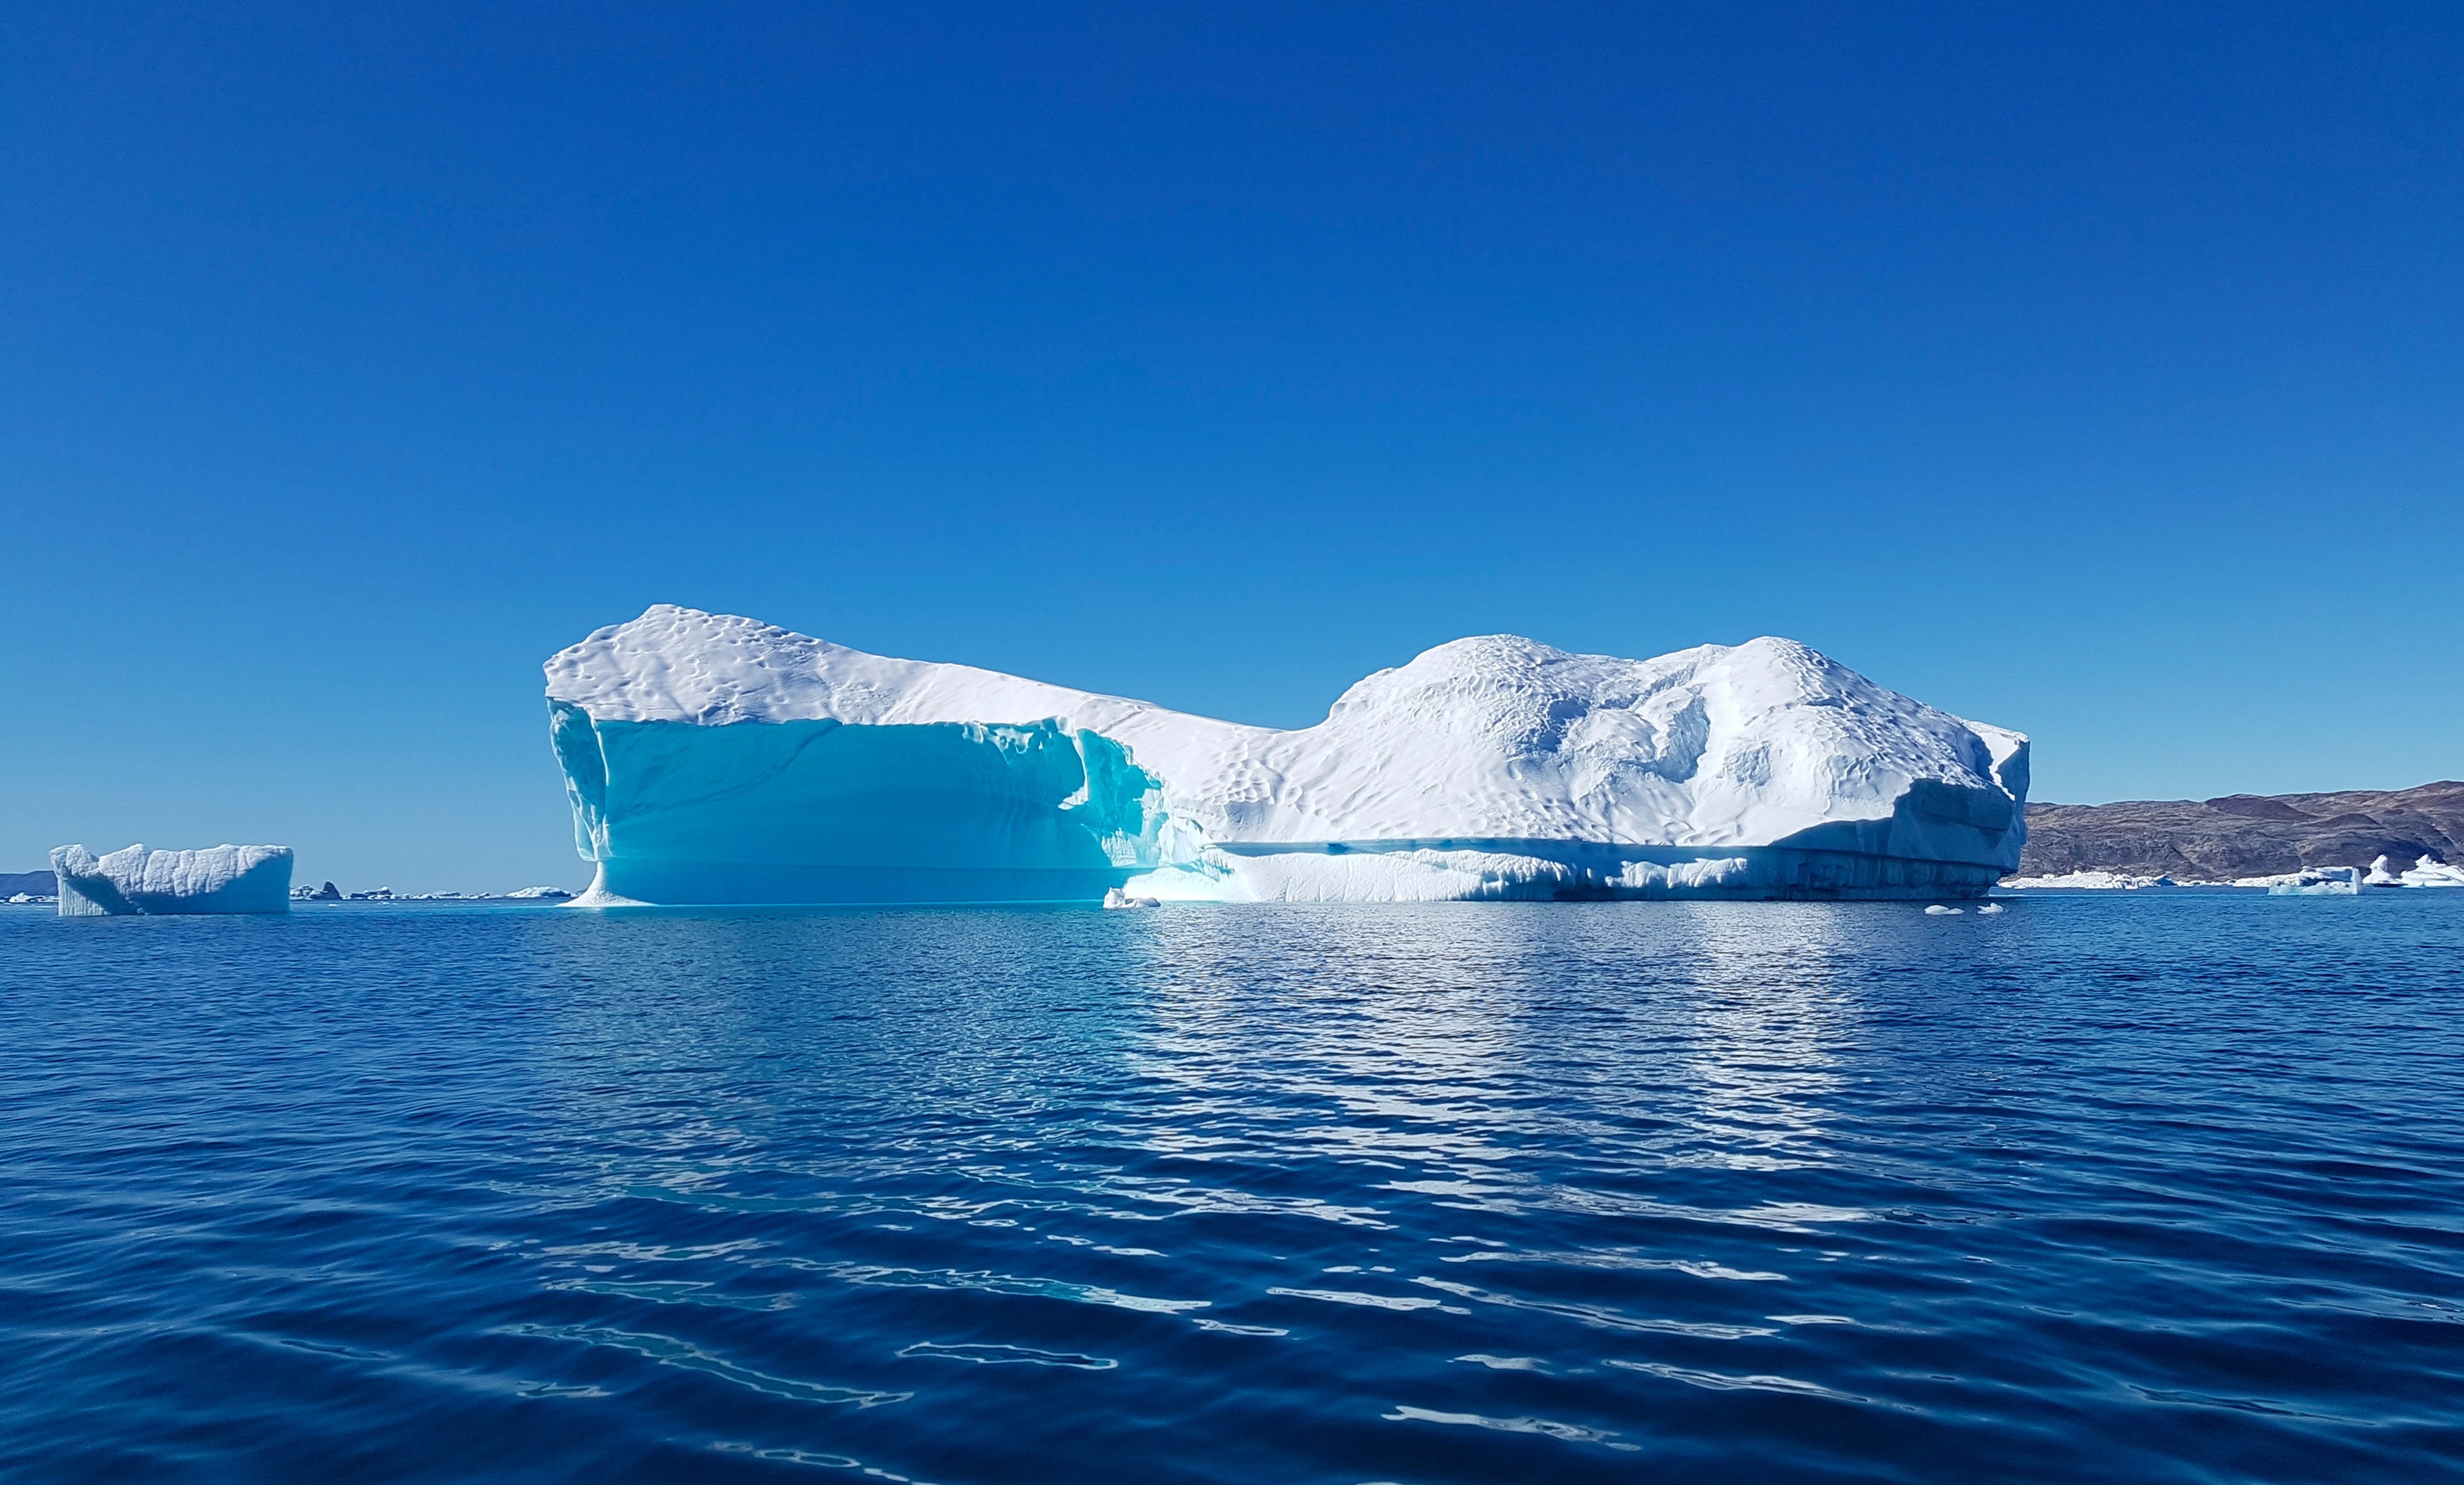 Айсберг в океане текст. Антарктида Гренландия Арктика Северный Ледовитый океан. Ледовитый океан Айсберг. Северный Ледовитый океан паковый лед. Айсберг под водой.